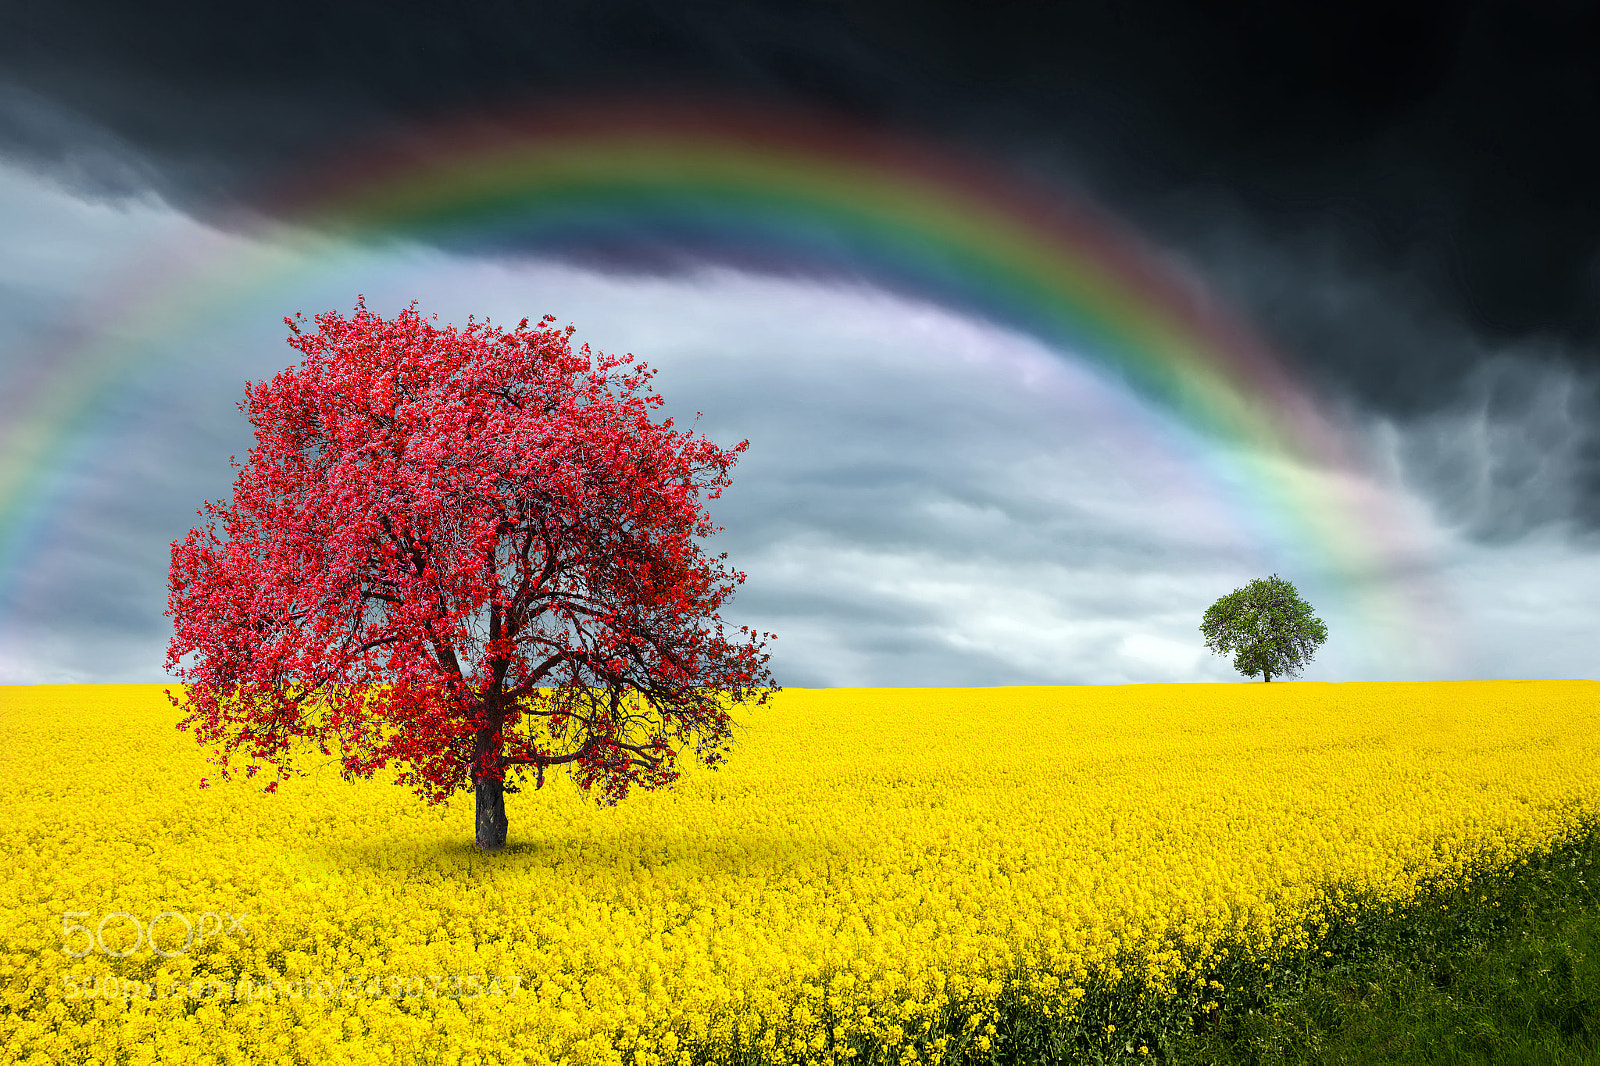 Nikon D5100 sample photo. Rainbow over a field photography